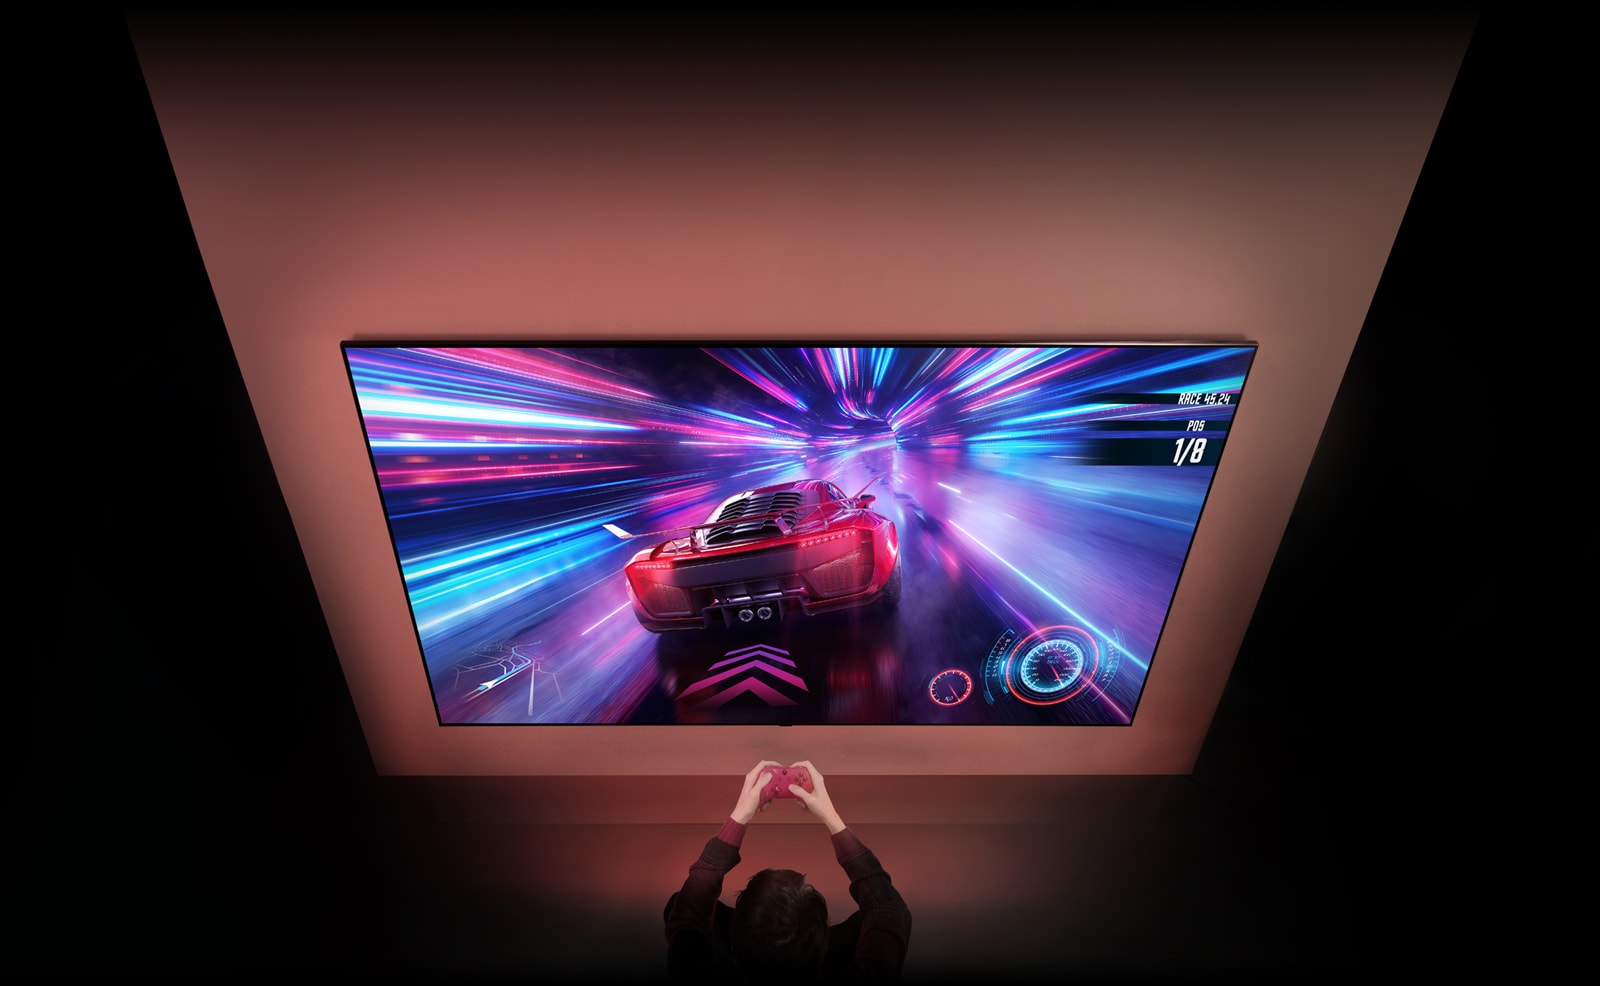 یک تلویزیون بزرگ دیواری قابل مشاهده است که می‌توانید صفحه بازی اتومبیلرانی را در صفحه نمایش ببینید. جلوی تلویزیون می‌توانید دست ها و کنترلرهای فردی که روی بازی تمرکز کرده است را ببینید.